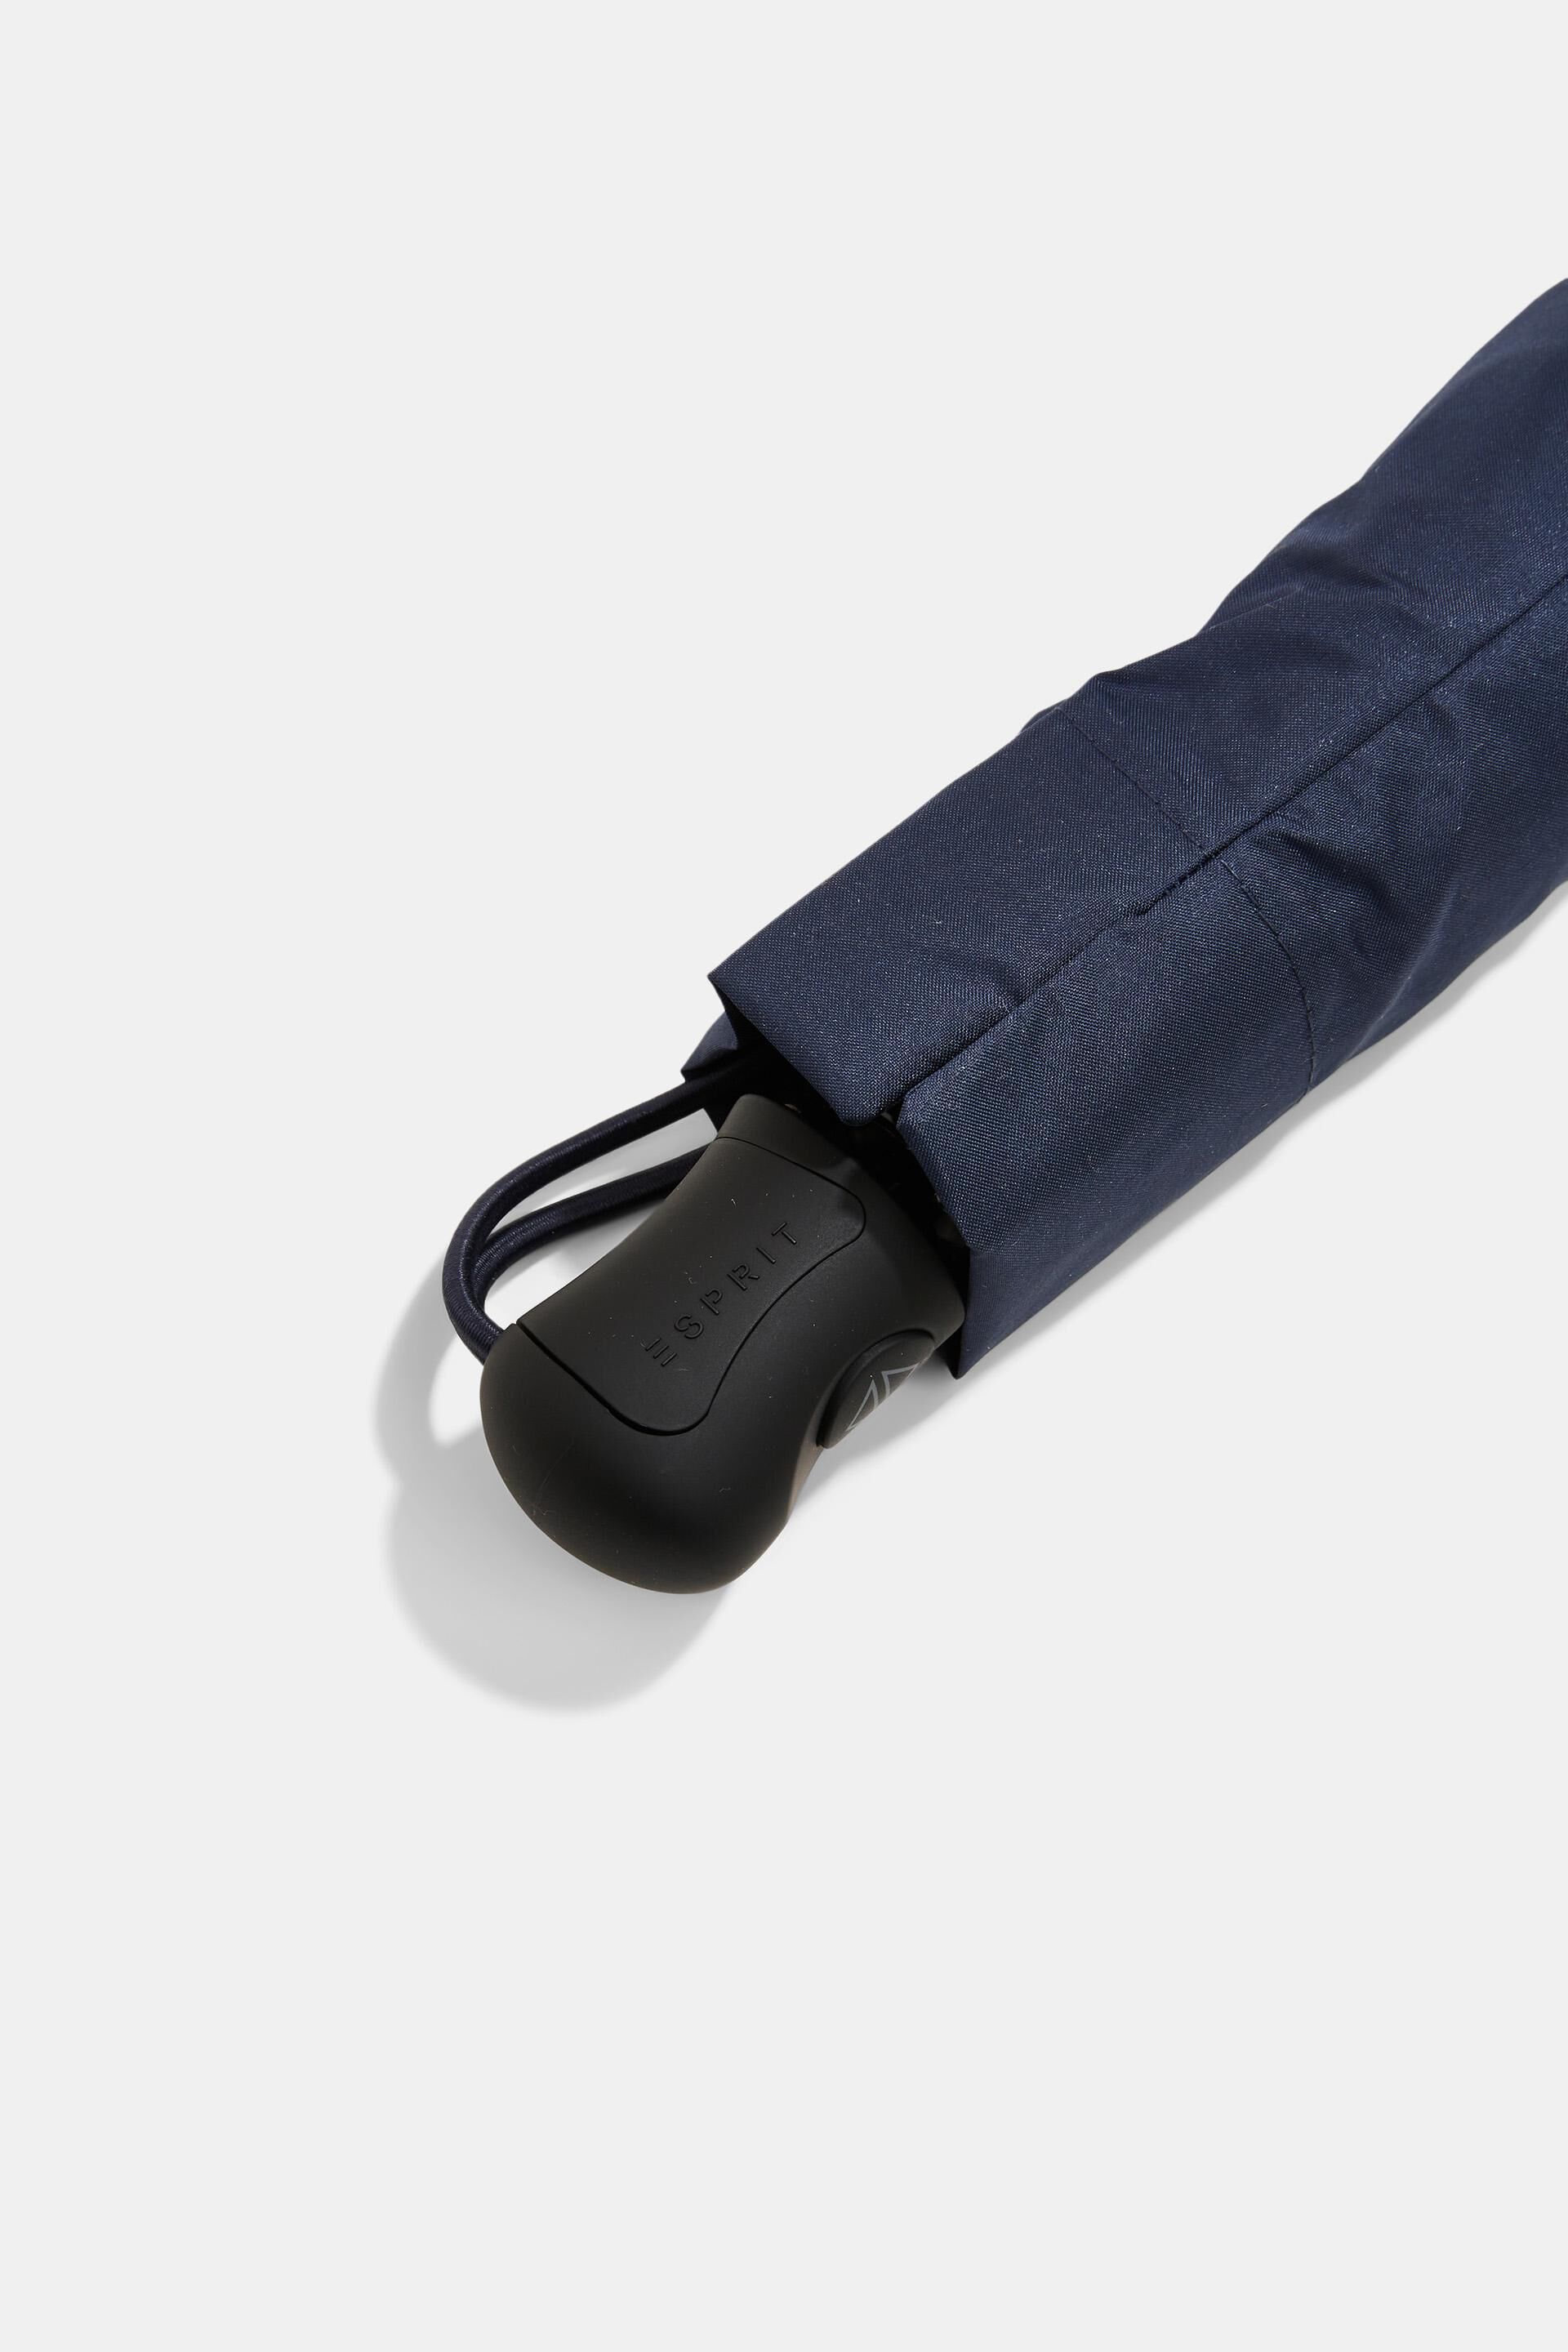 Esprit Online Store Easymatic Slimline-Taschenschirm Blau in